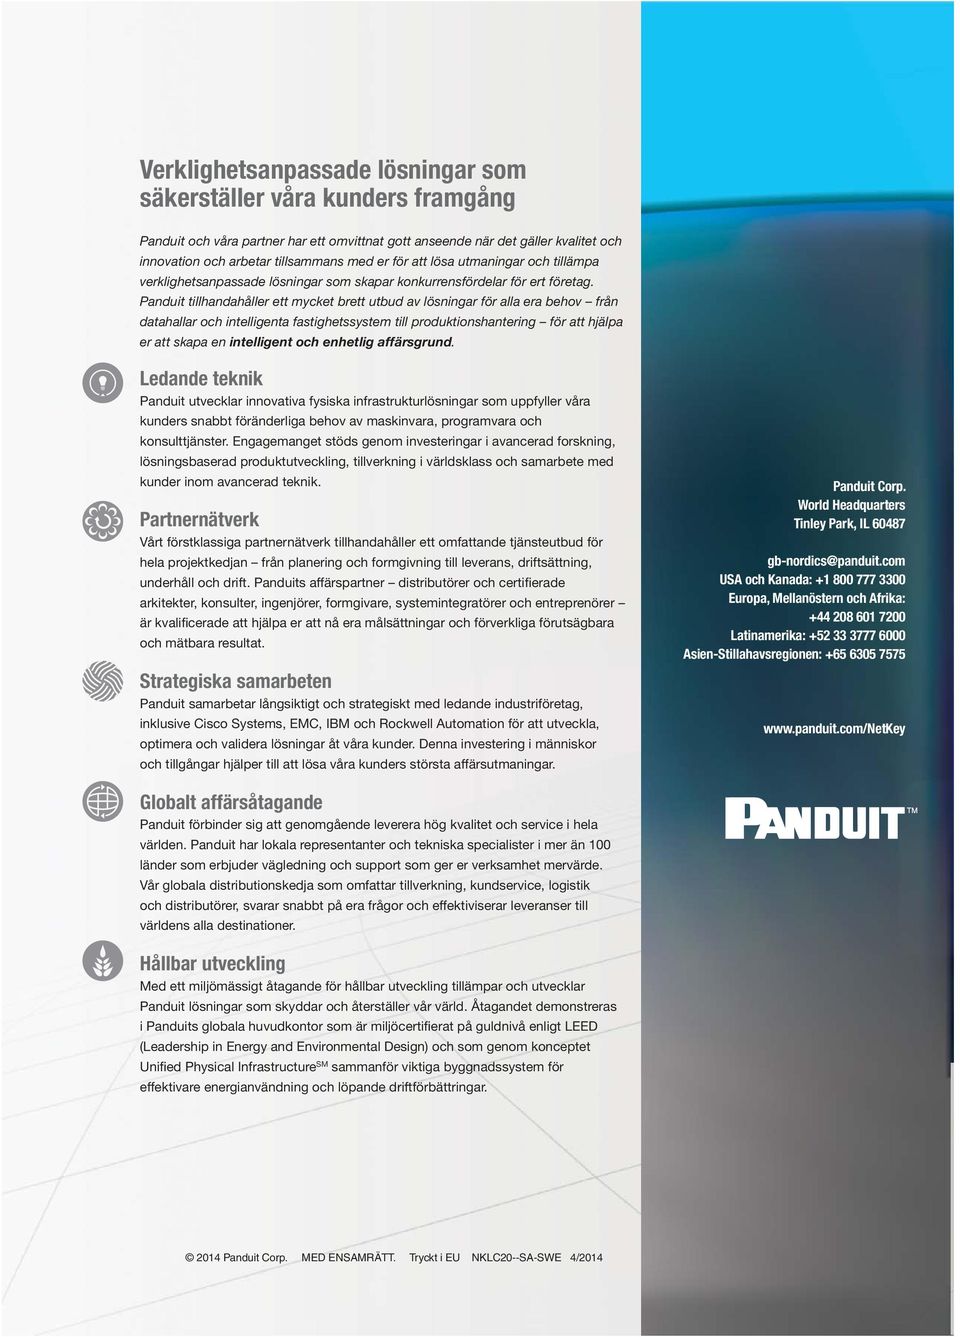 Panduit tillhandahåller ett mycket brett utbud av lösningar för alla era behov från datahallar och intelligenta fastighetssystem till produktionshantering för att hjälpa er att skapa en intelligent